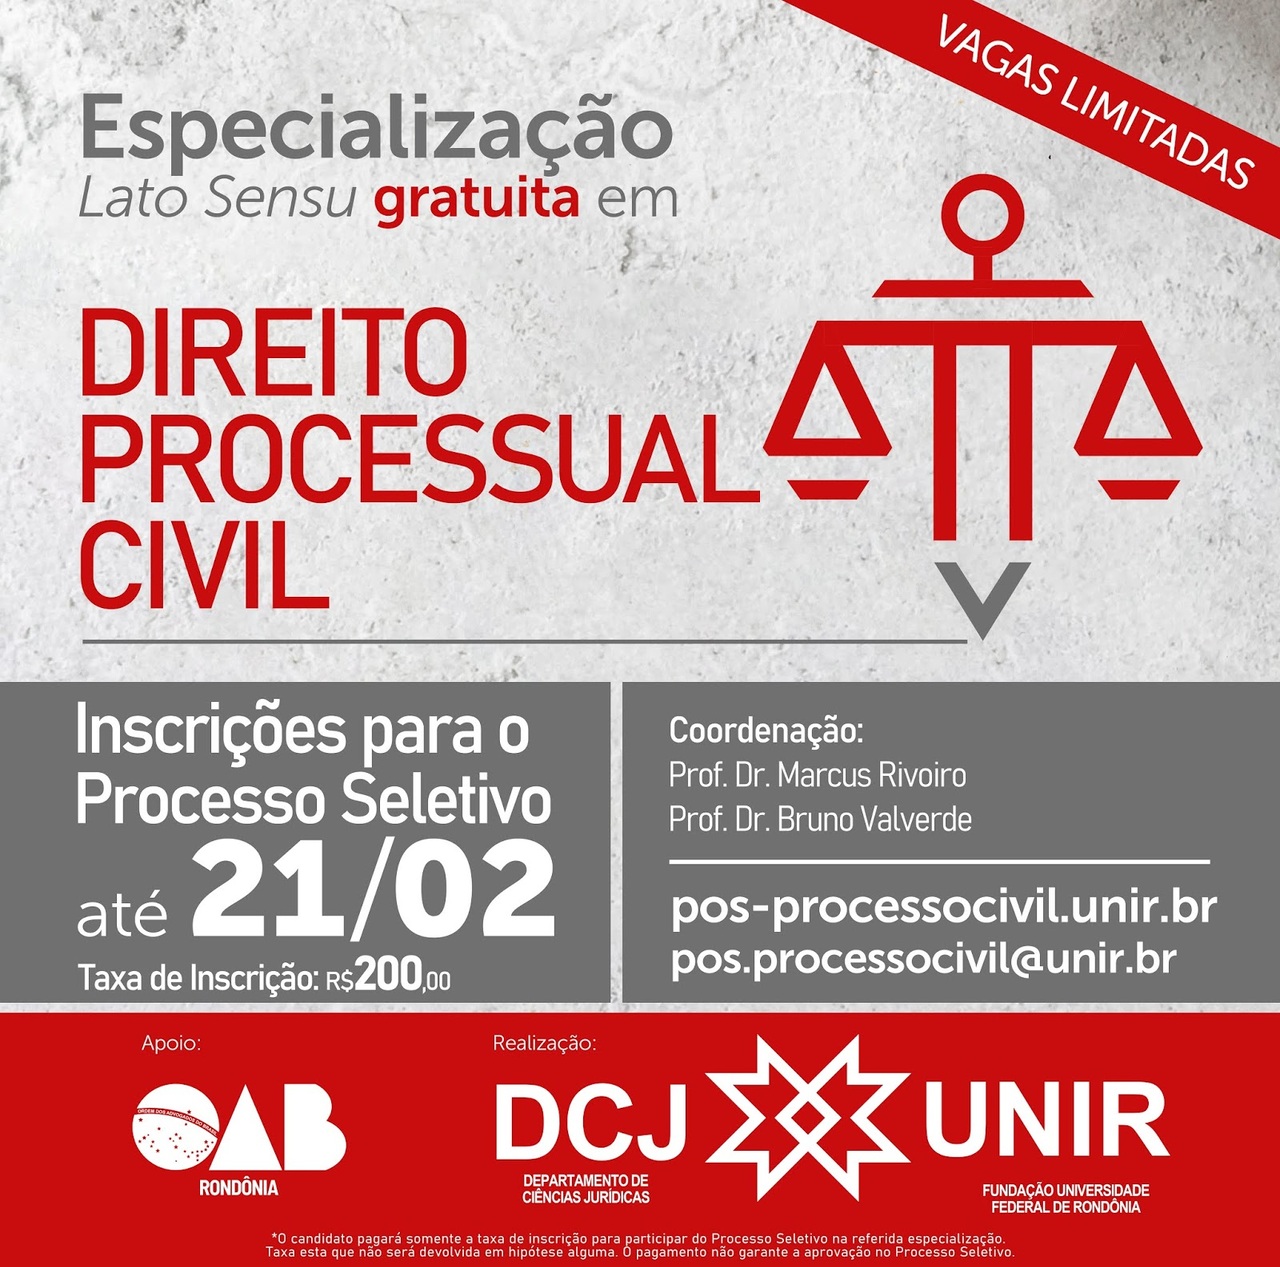 Unir realiza seleção para especialização em Direito Processual Civil